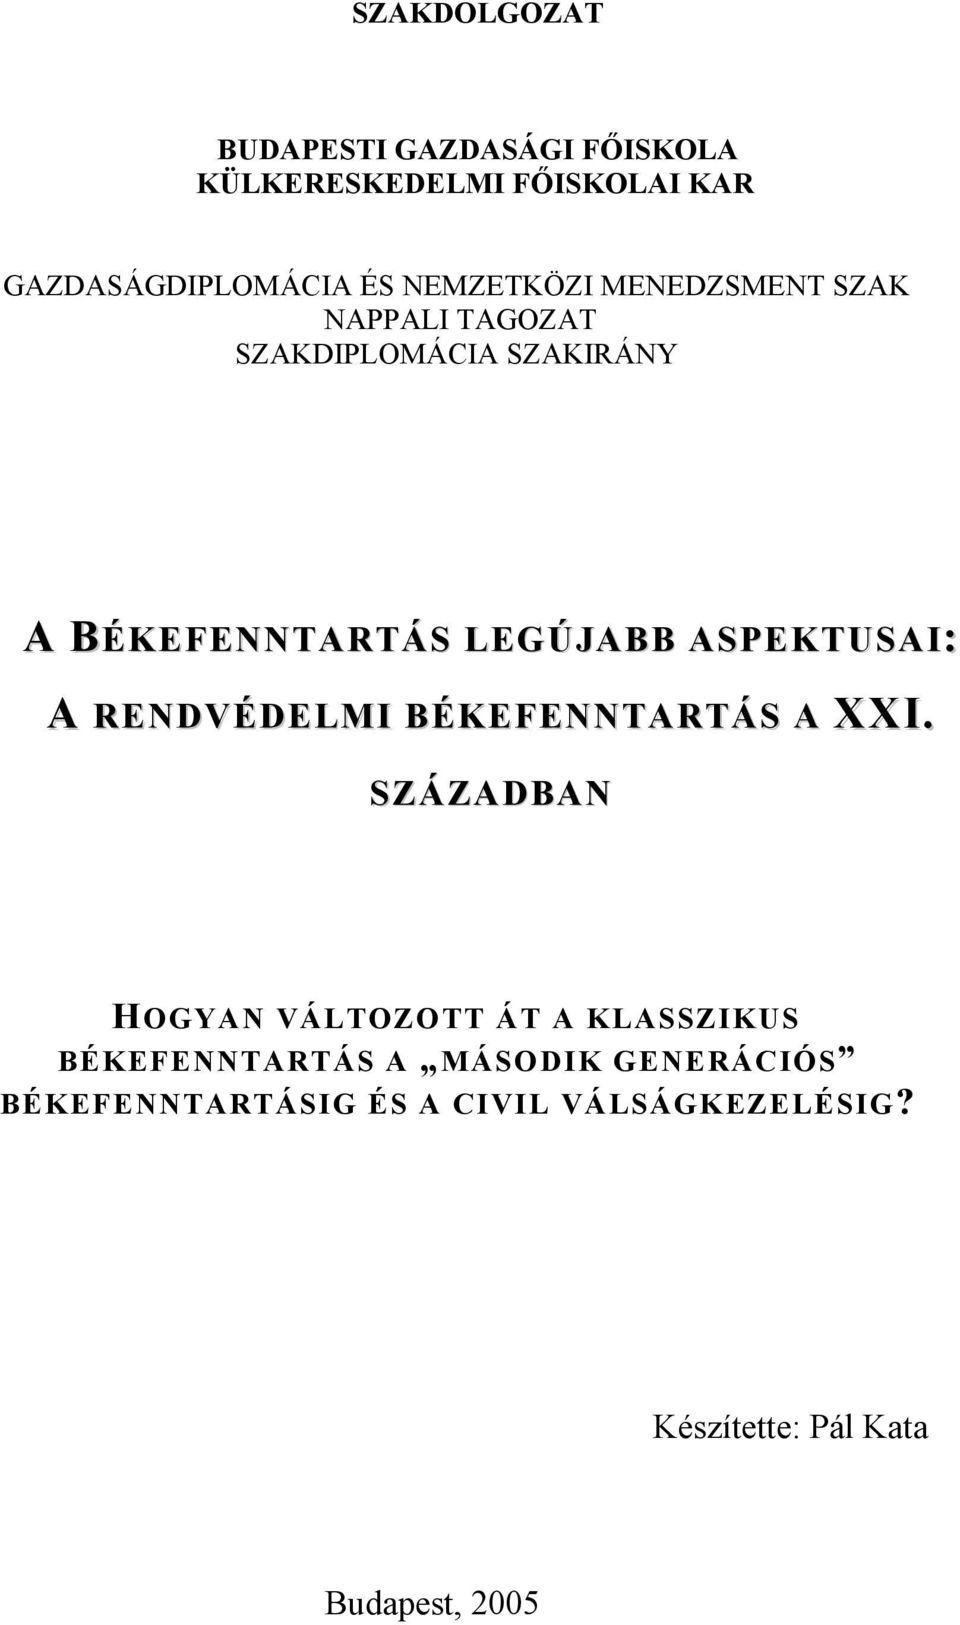 SZAKDOLGOZAT BUDAPESTI GAZDASÁGI FŐISKOLA KÜLKERESKEDELMI FŐISKOLAI KAR -  PDF Free Download